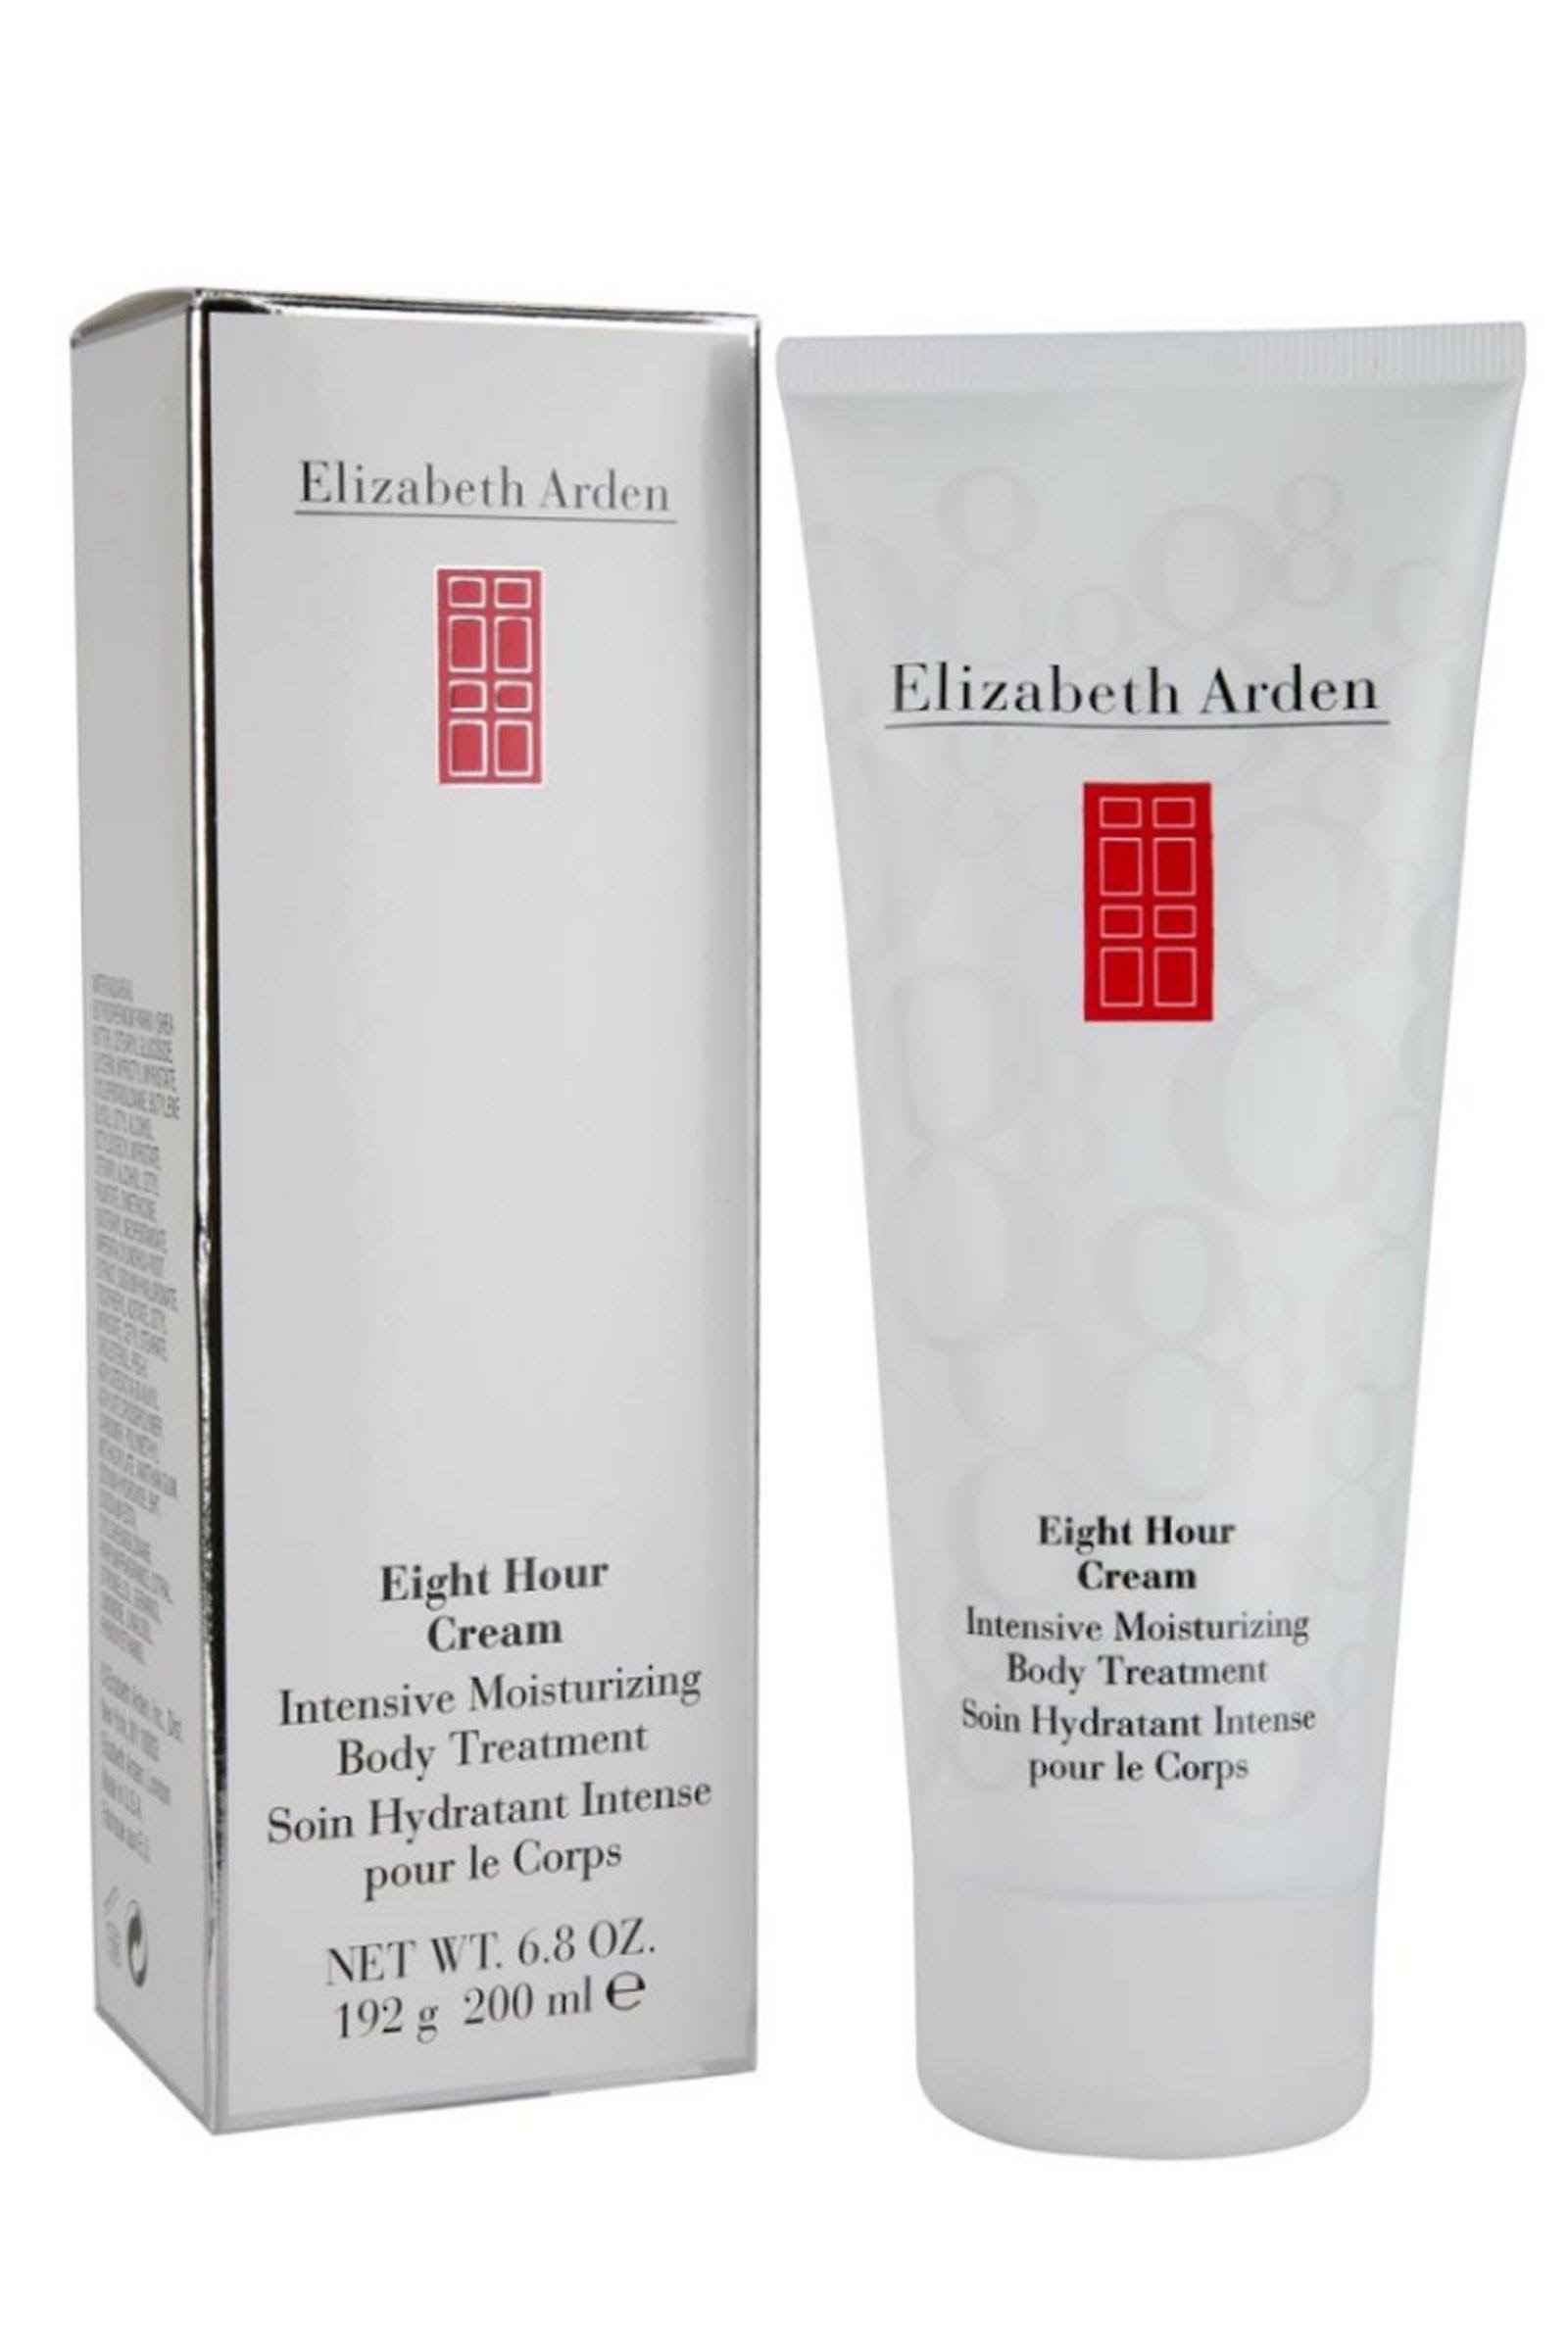 Elizabeth Arden Eight Hour Cream Intensive Moisturising Hand Treatment - 70ml